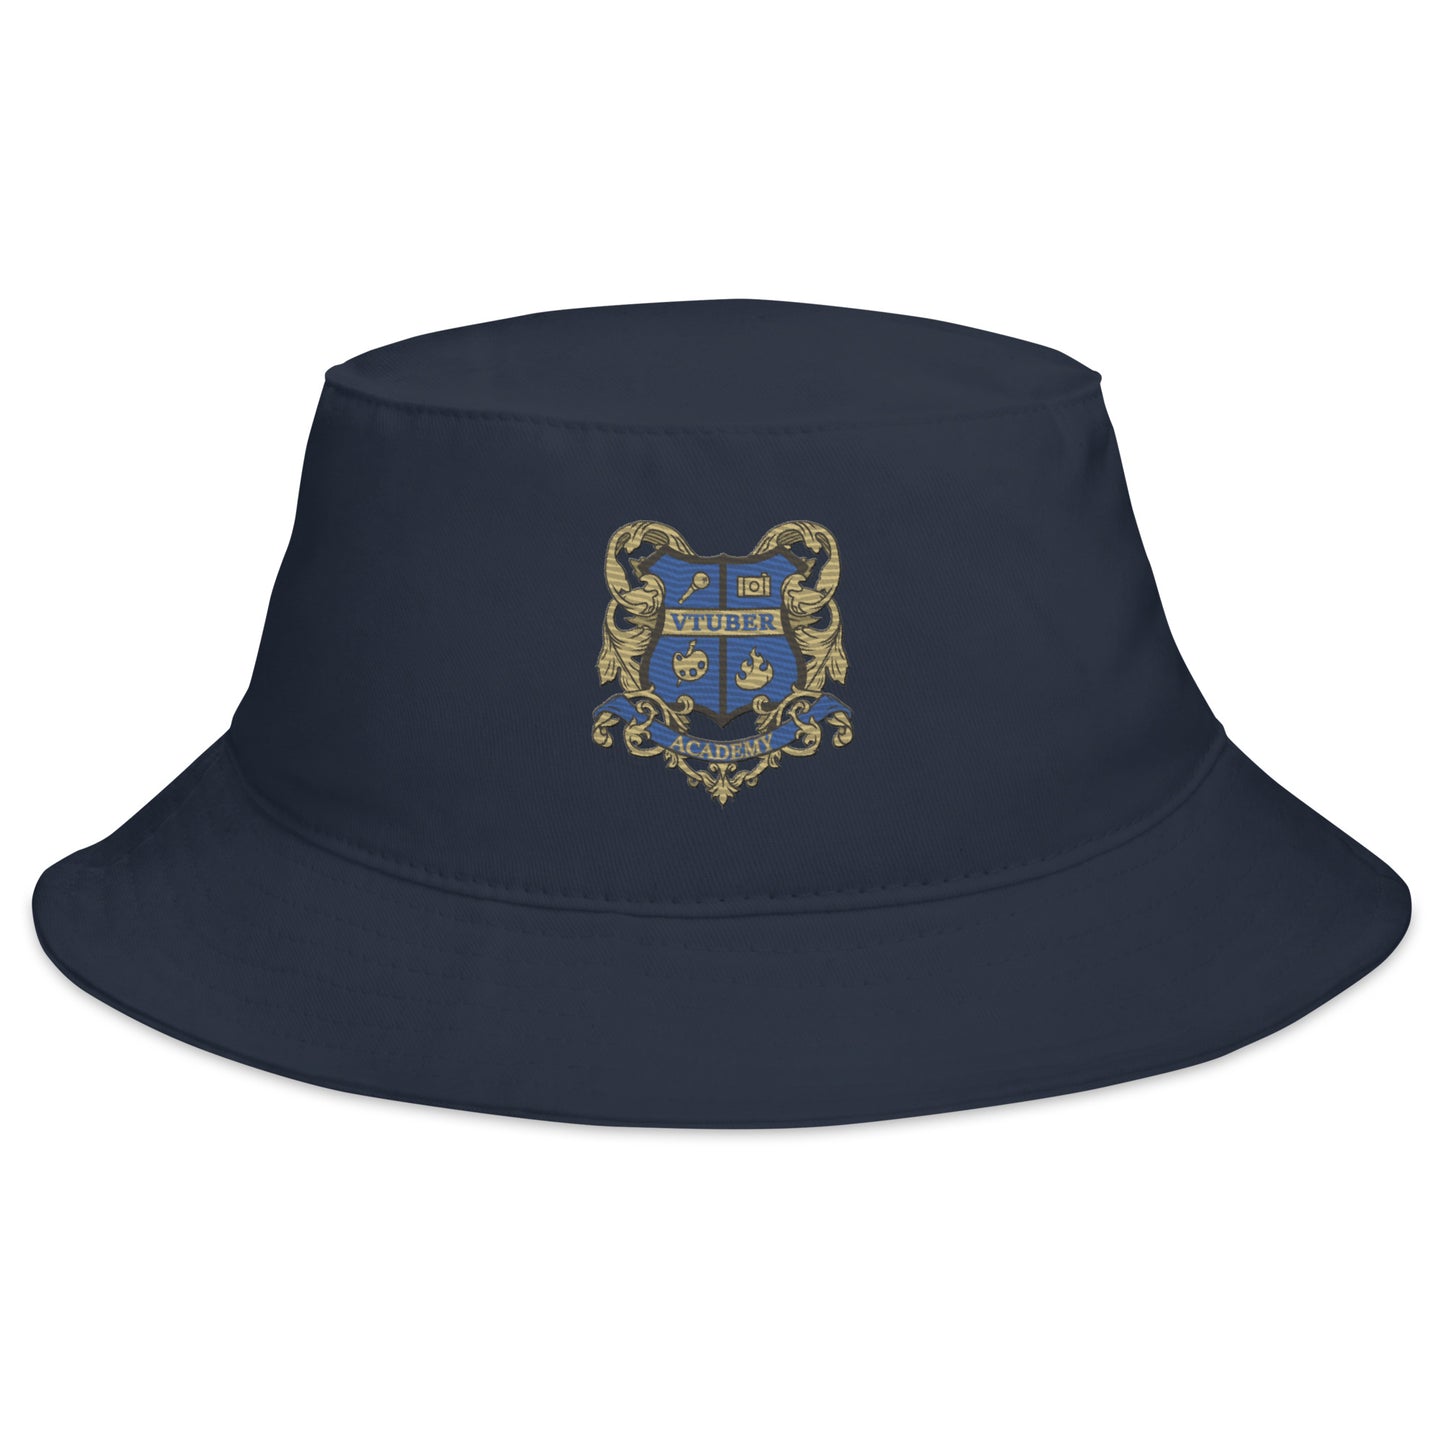 VTuber Academy Studio - Academy Crest - Bucket Hat